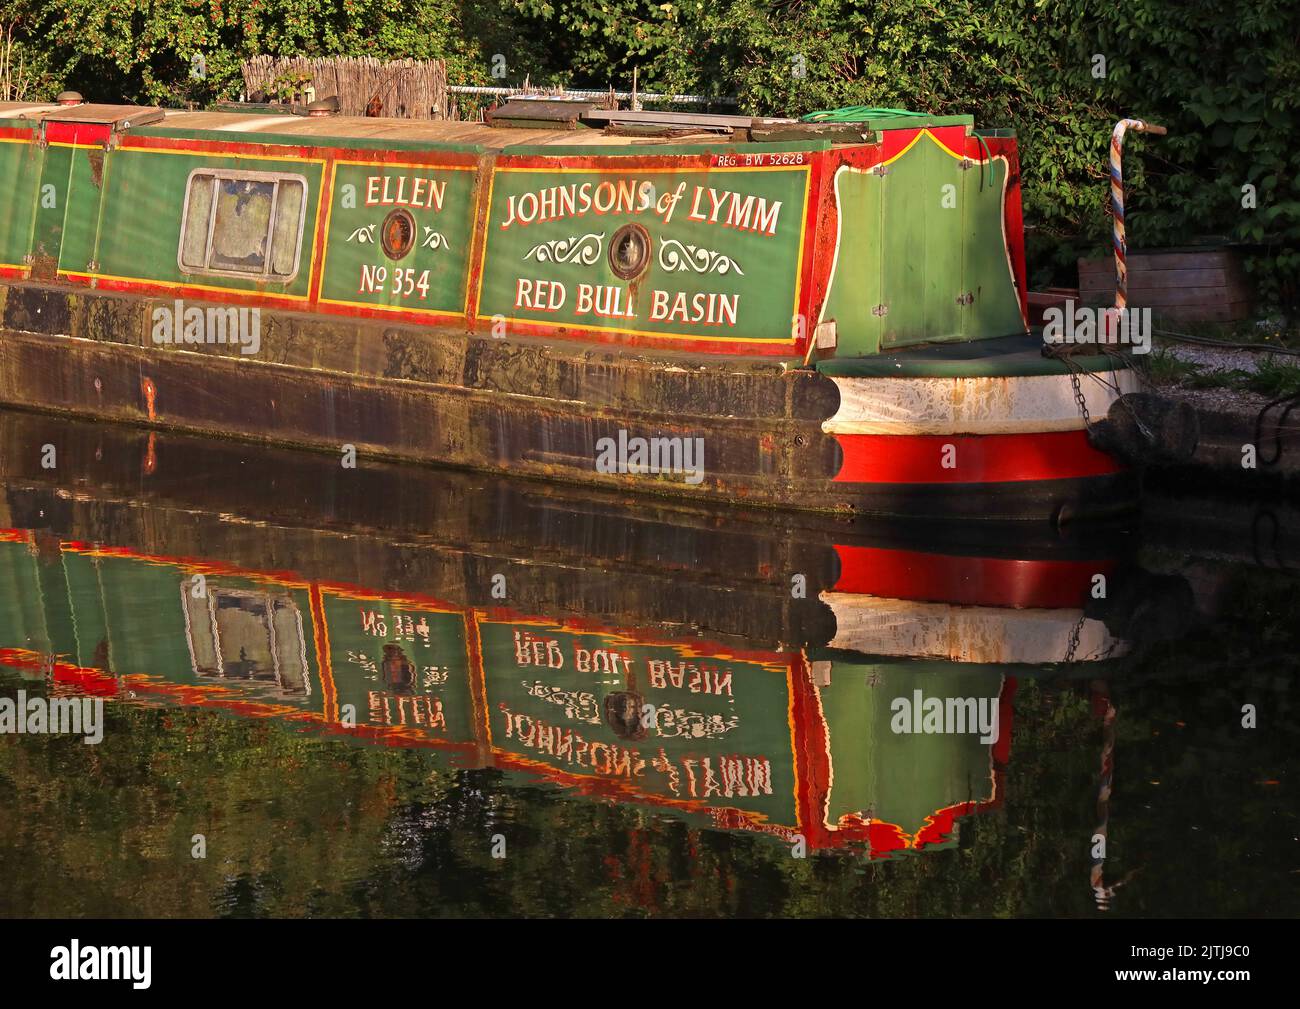 Ellen No354, barge verte, Johnsons de Lymm, Red Bull Basin, sur le canal de Bridgewater à Grappenhall / Thelwall avec réflexion, Warrington, Cheshire, WA4 Banque D'Images